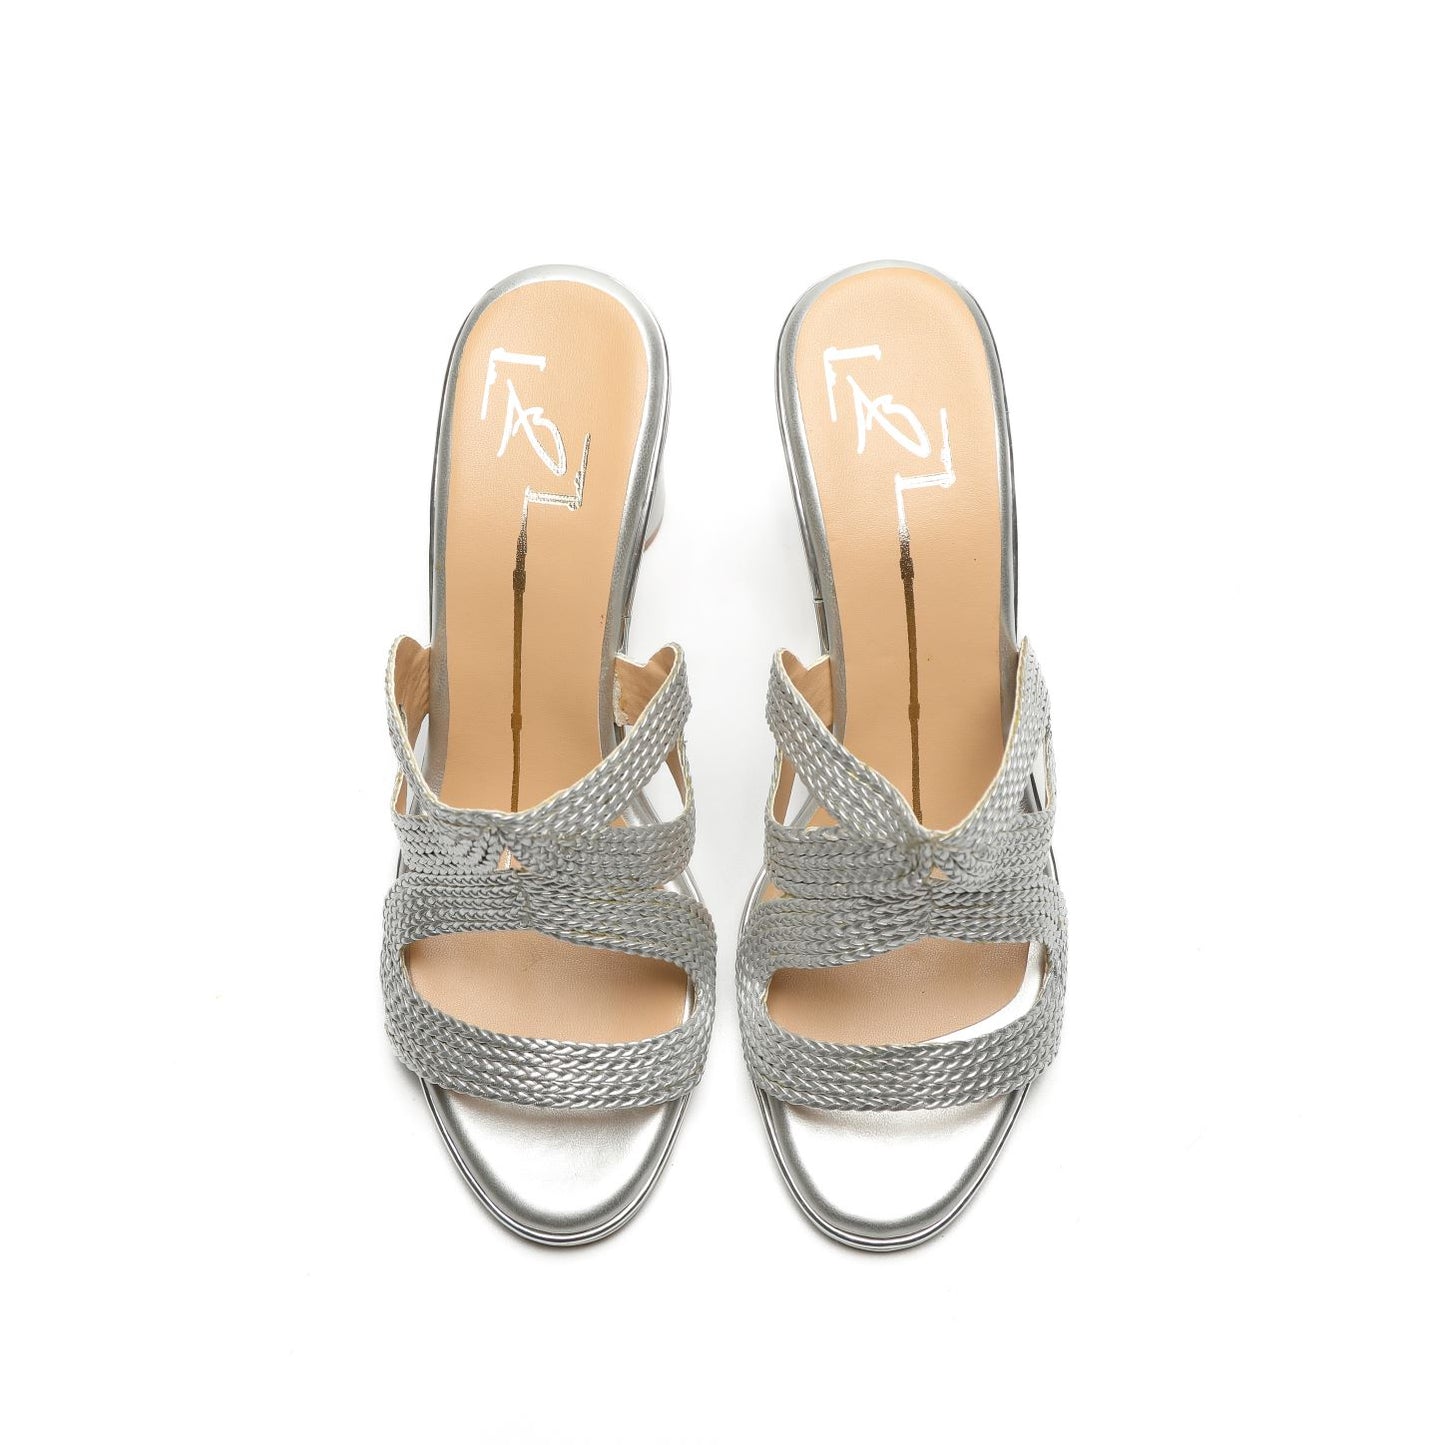 Silver Textured Block Heels